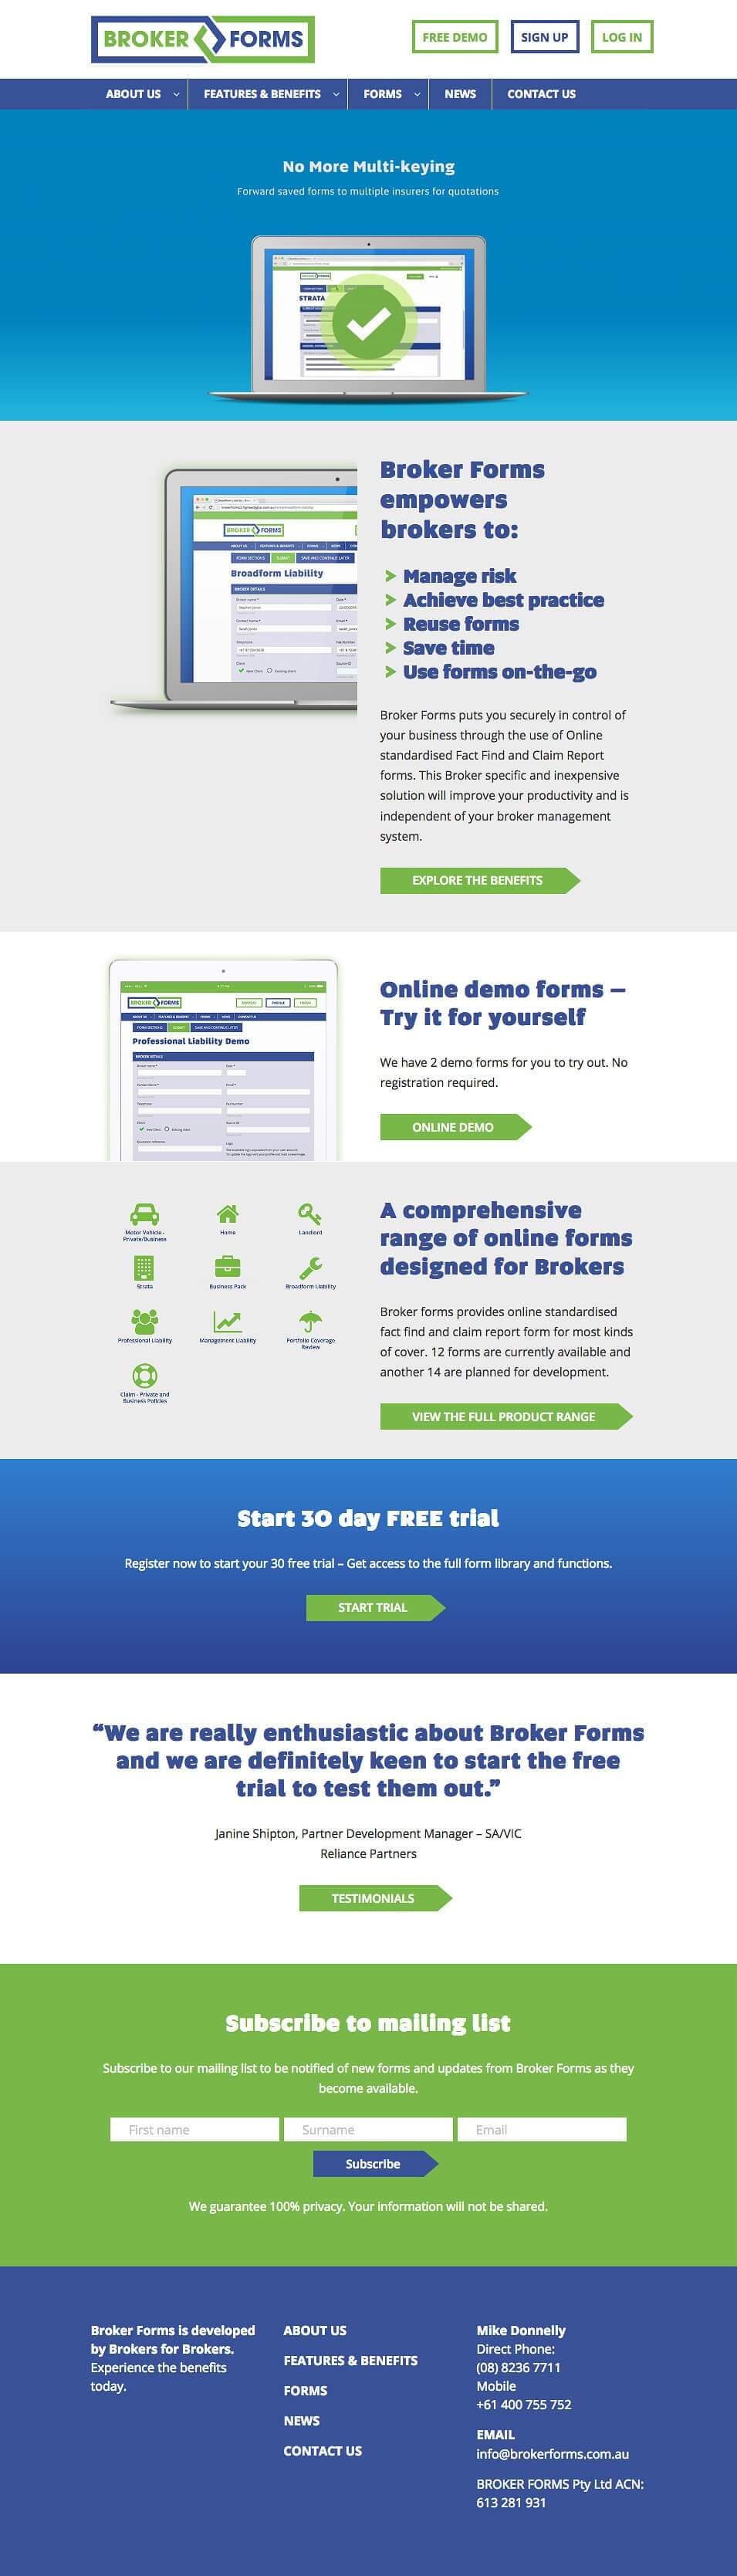 Broker forms - website